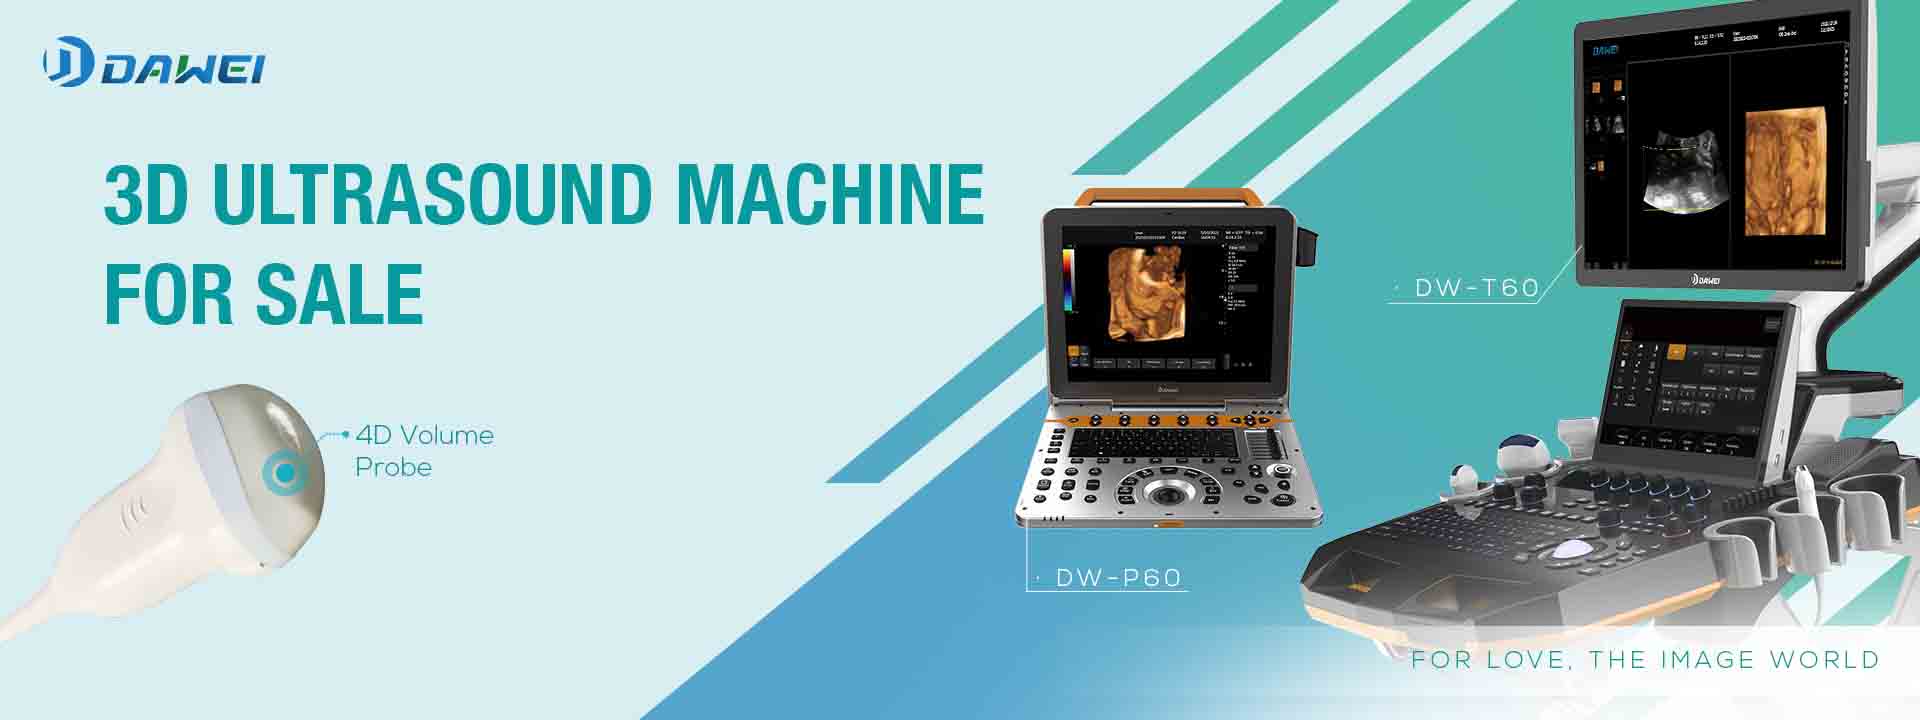 ለሽያጭ Dawei Medical 3D Ultrasound Machine